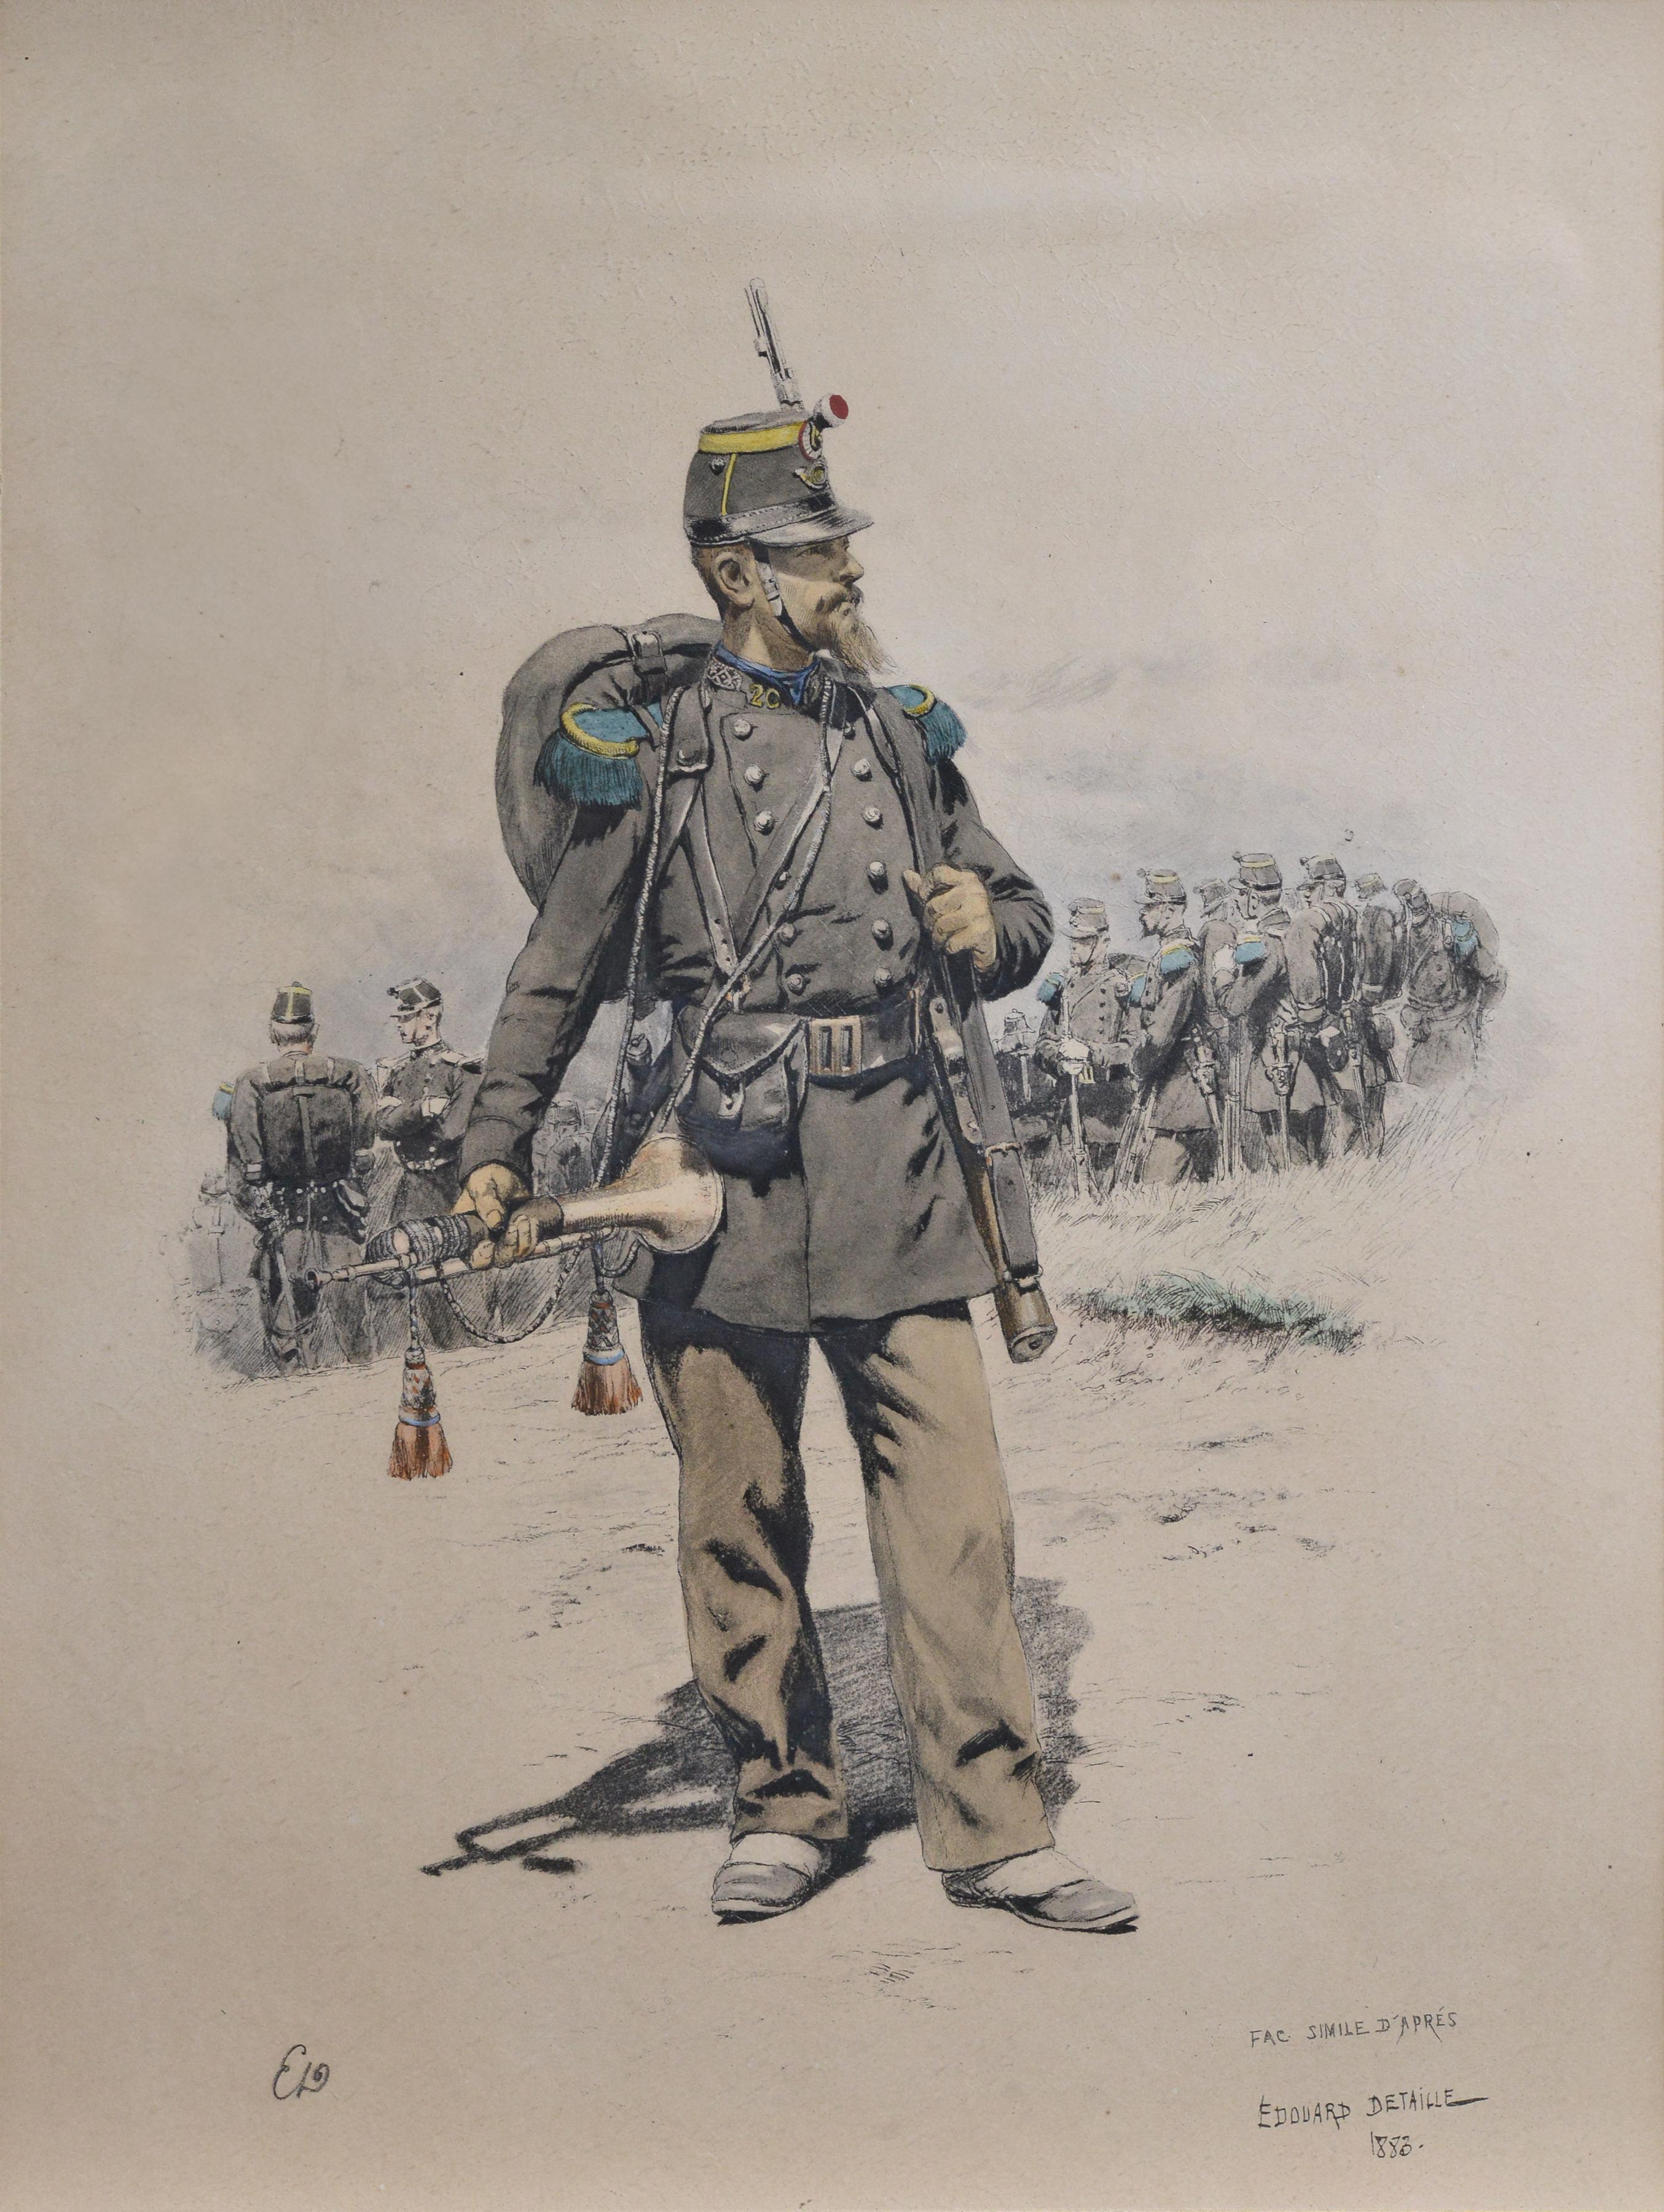 Bugler of Chasseurs Corps par Ed Detaille, lithographie couleur fac-similé du 19e siècle - Print de Jean Baptiste Édouard Detaille